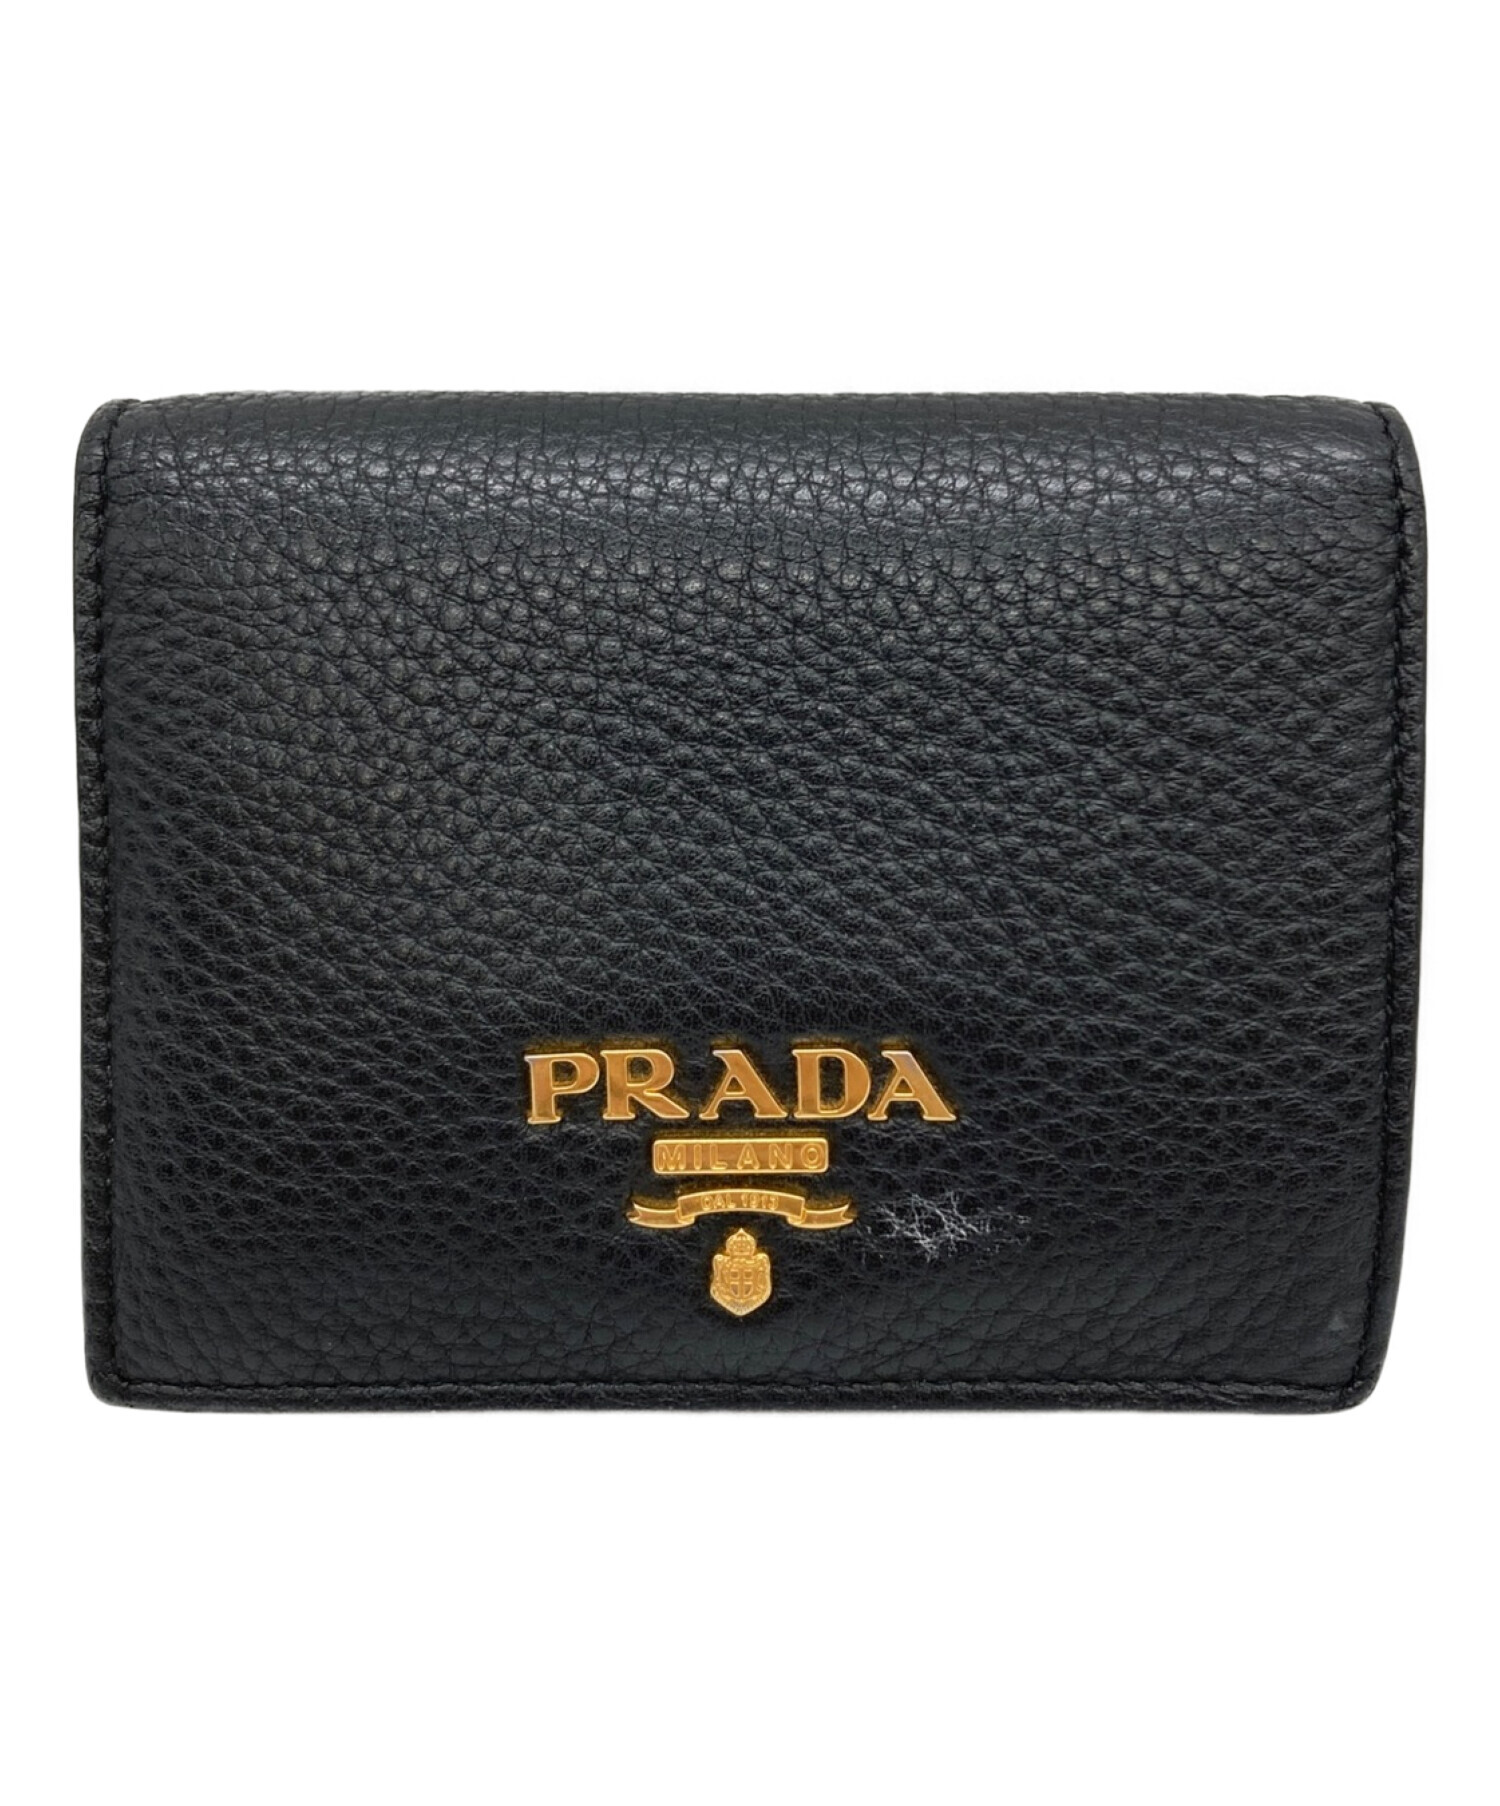 PRADA ブラック×レッド バイカラー 二つ折り財布